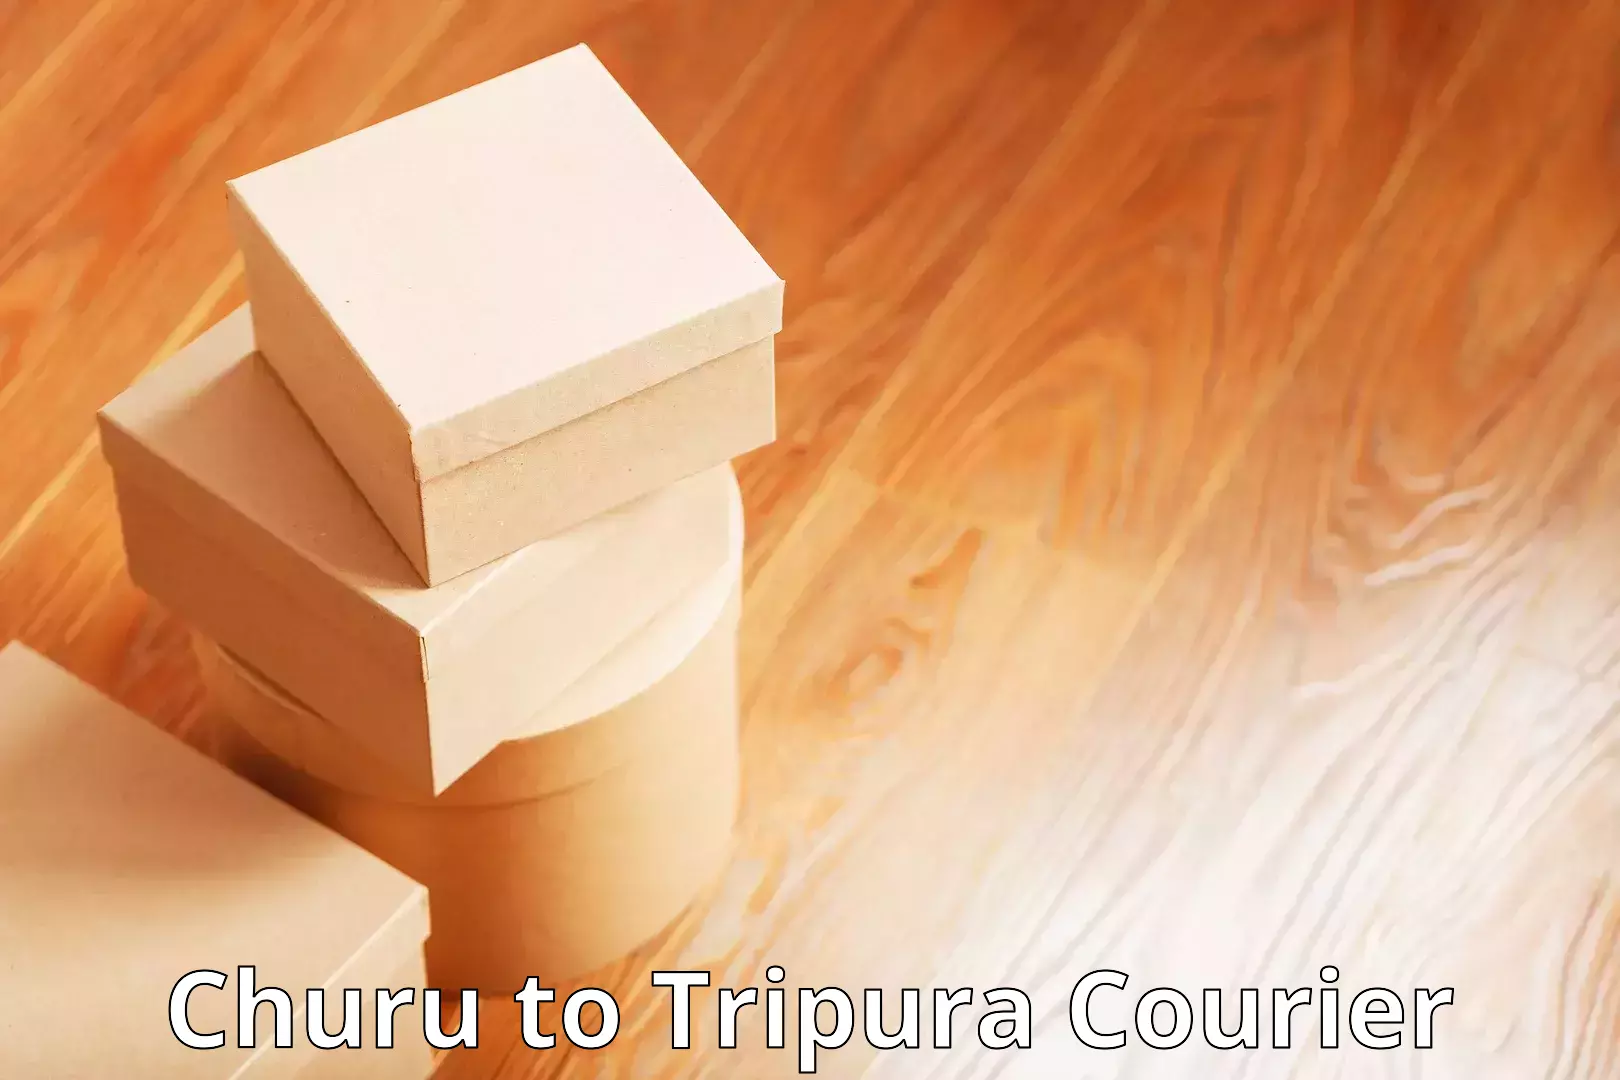 E-commerce fulfillment Churu to Tripura